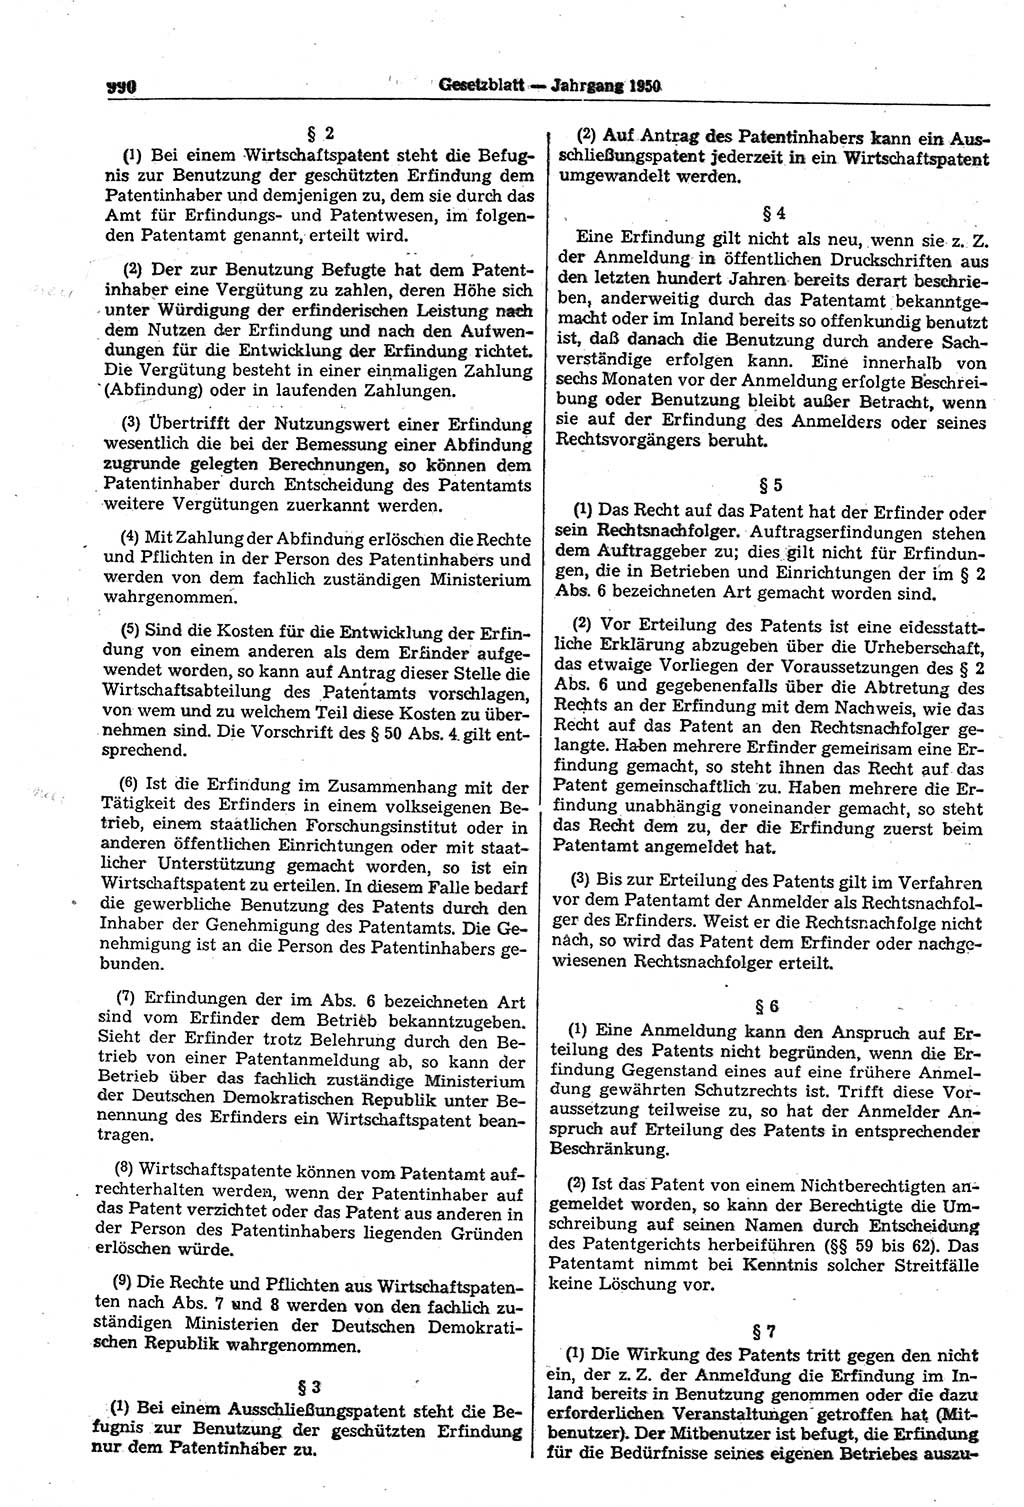 Gesetzblatt (GBl.) der Deutschen Demokratischen Republik (DDR) 1950, Seite 990 (GBl. DDR 1950, S. 990)